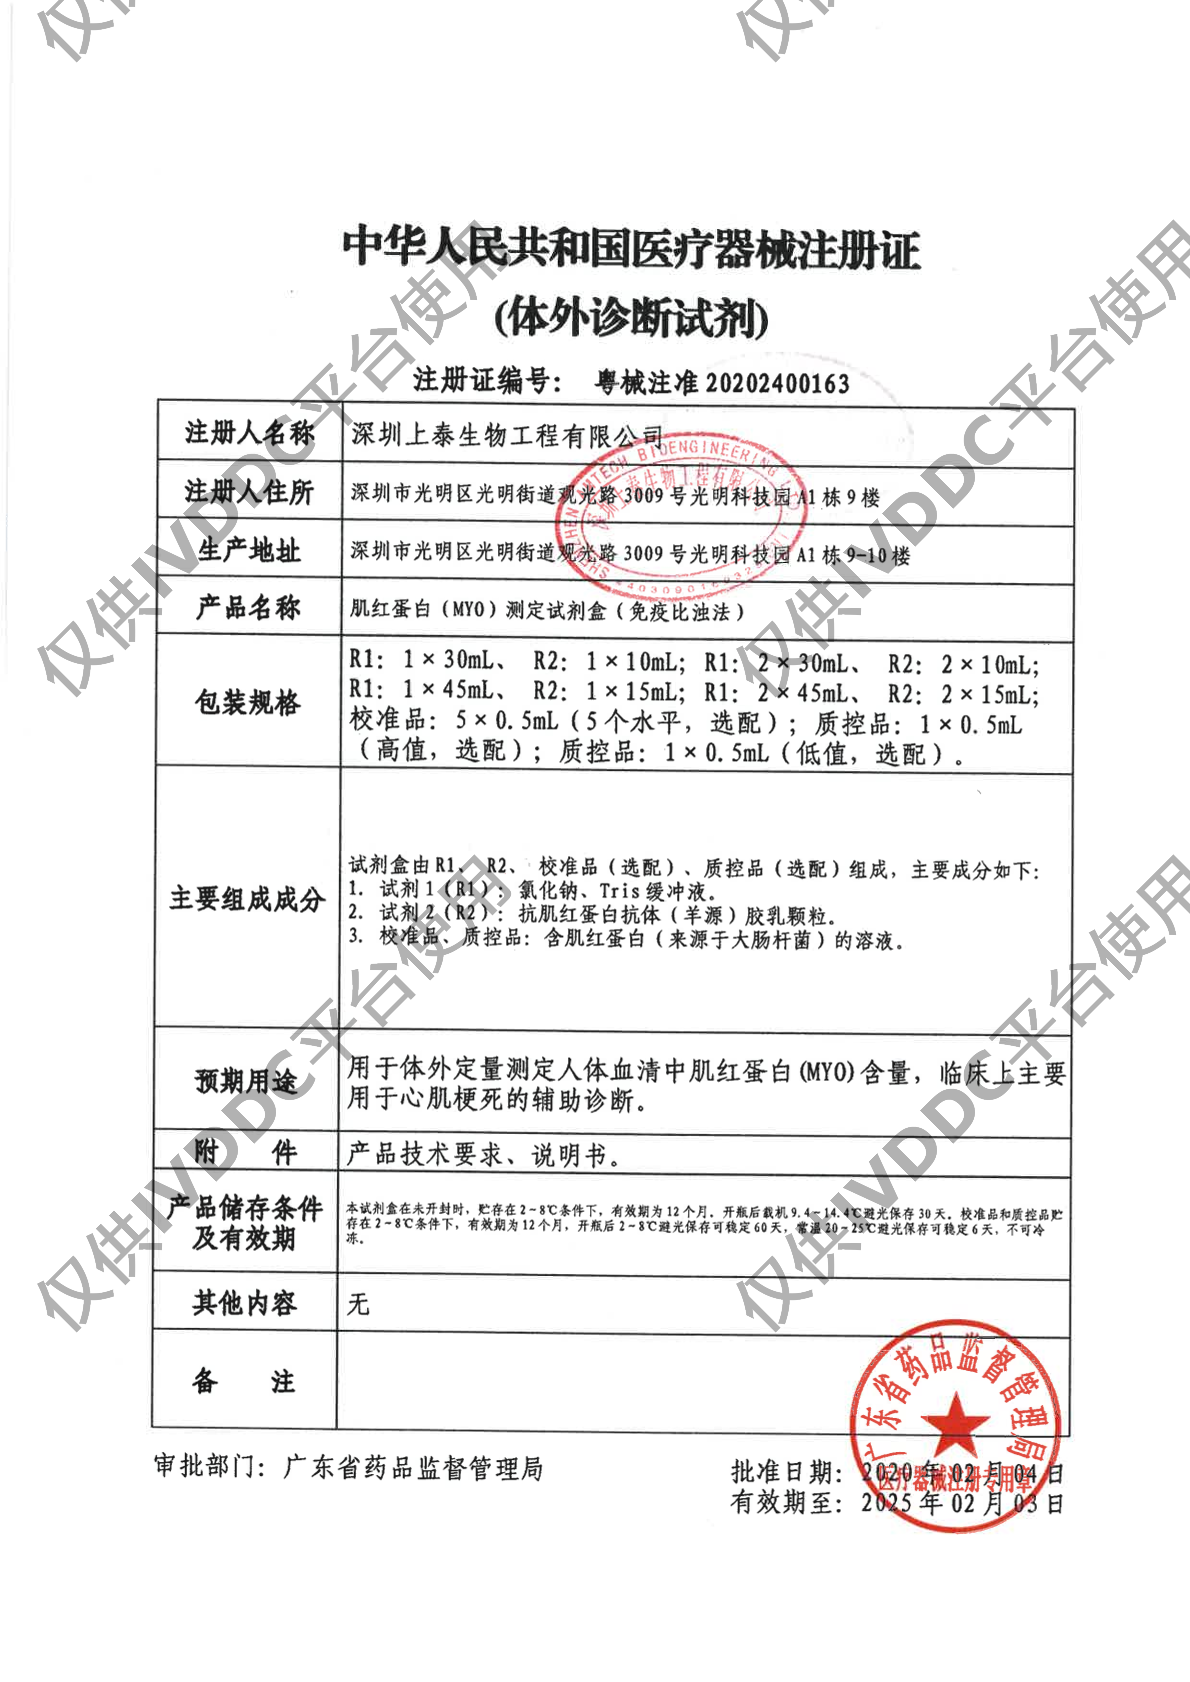 【深圳上泰】肌红蛋白(MYO)测定试剂盒(免疫比浊法)注册证